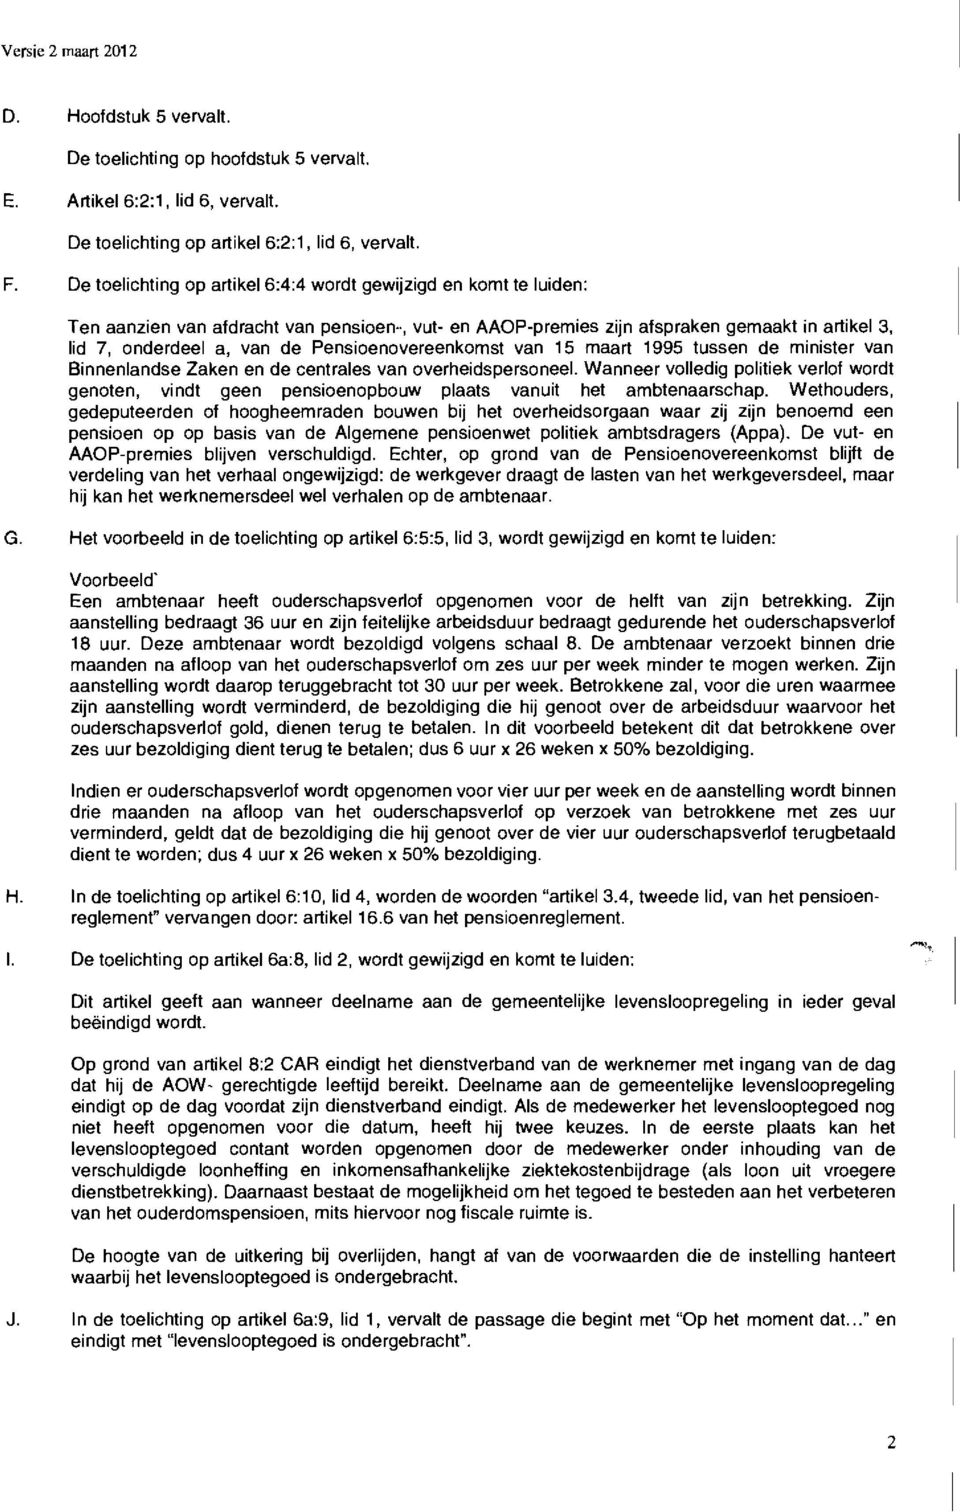 Pensioenovereenkomst van 15 maart 1995 tussen de minister van Binnenlandse Zaken en de centrales van overheidspersoneel.